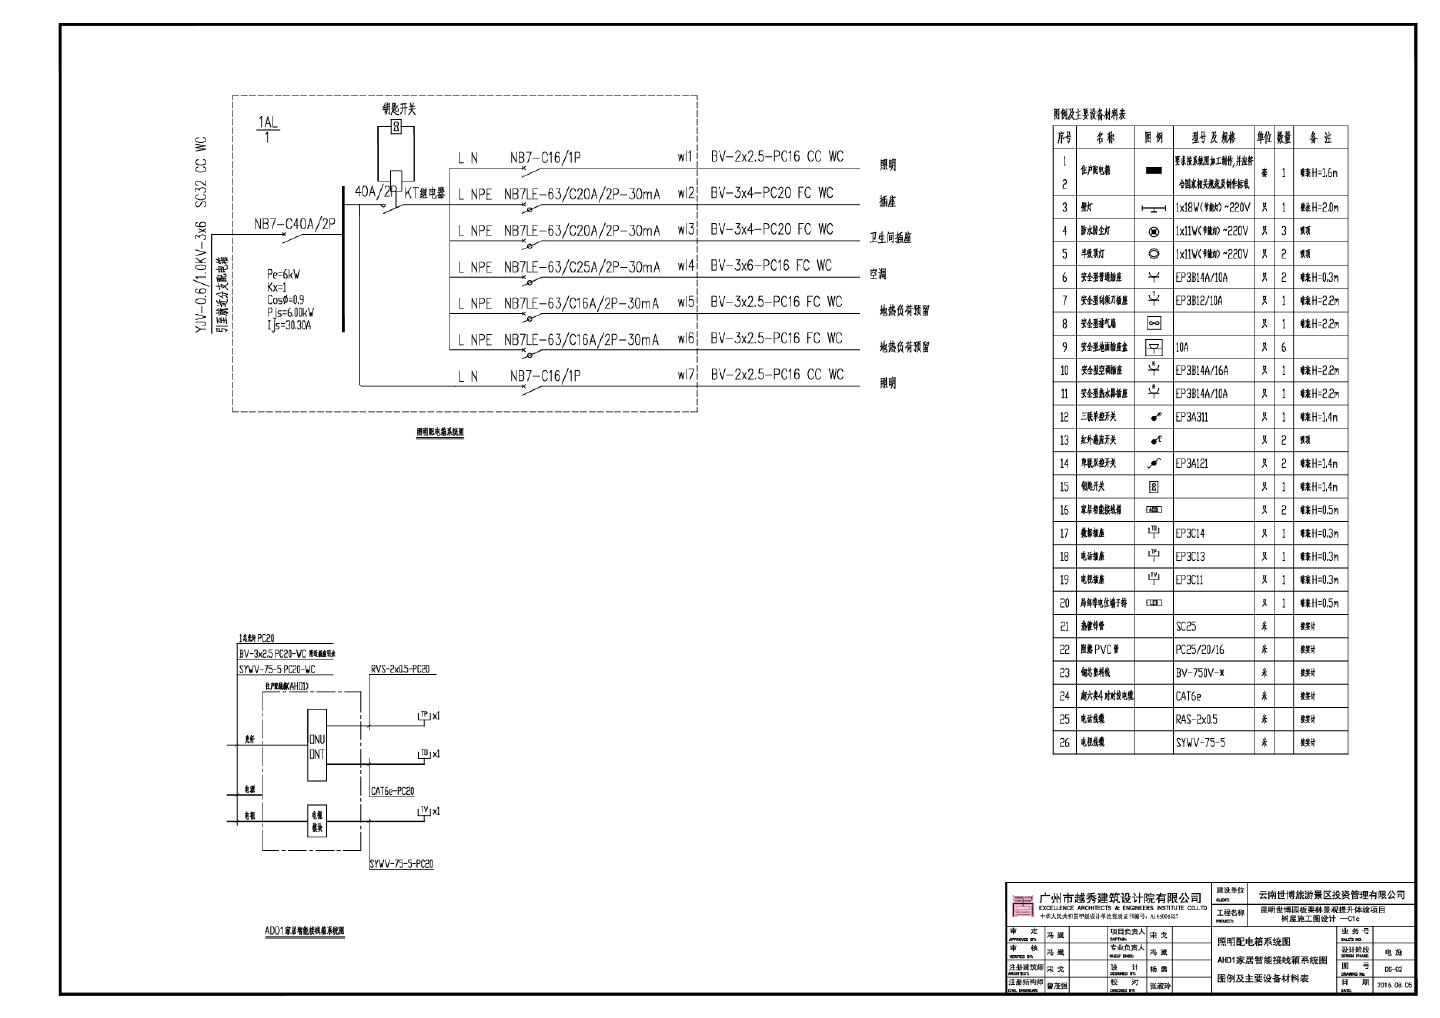 昆明世博园板栗林景观提升体验项目树屋施工图设计-C1c电气CAD图.dwg